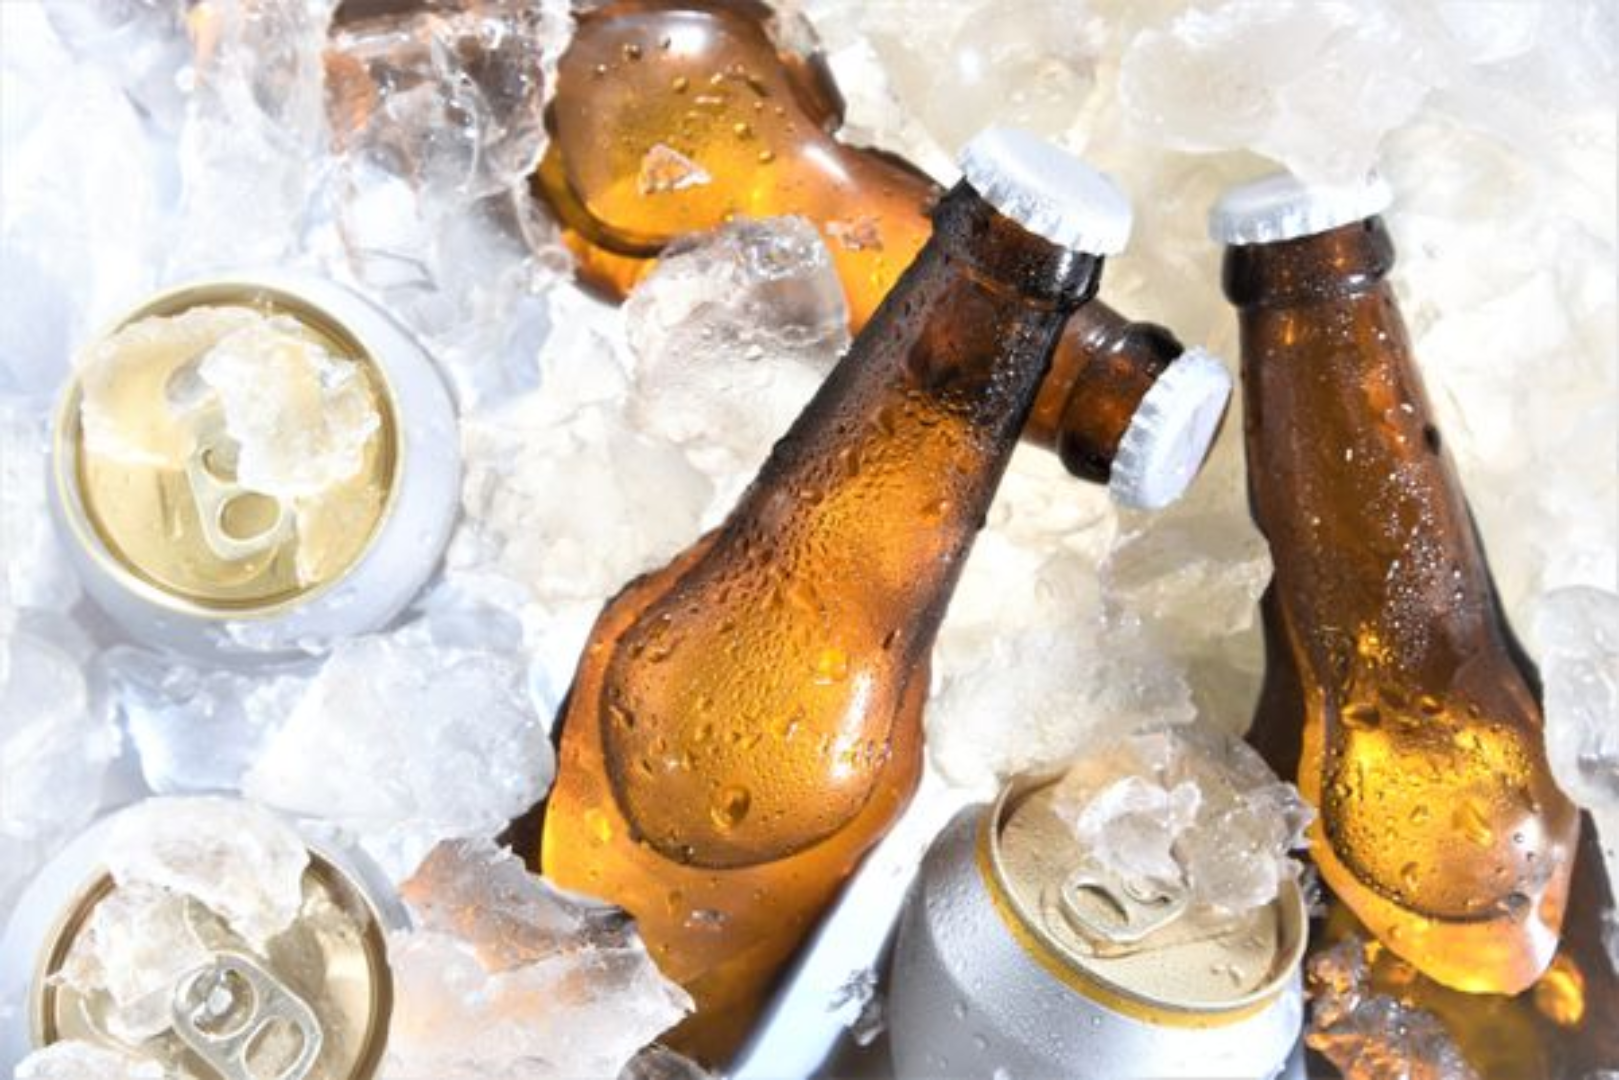 Confira uma seleção de cervejas especiais que custam entre R$ 5,50 e R$ 14,50, em média, para curtir durante os festejos